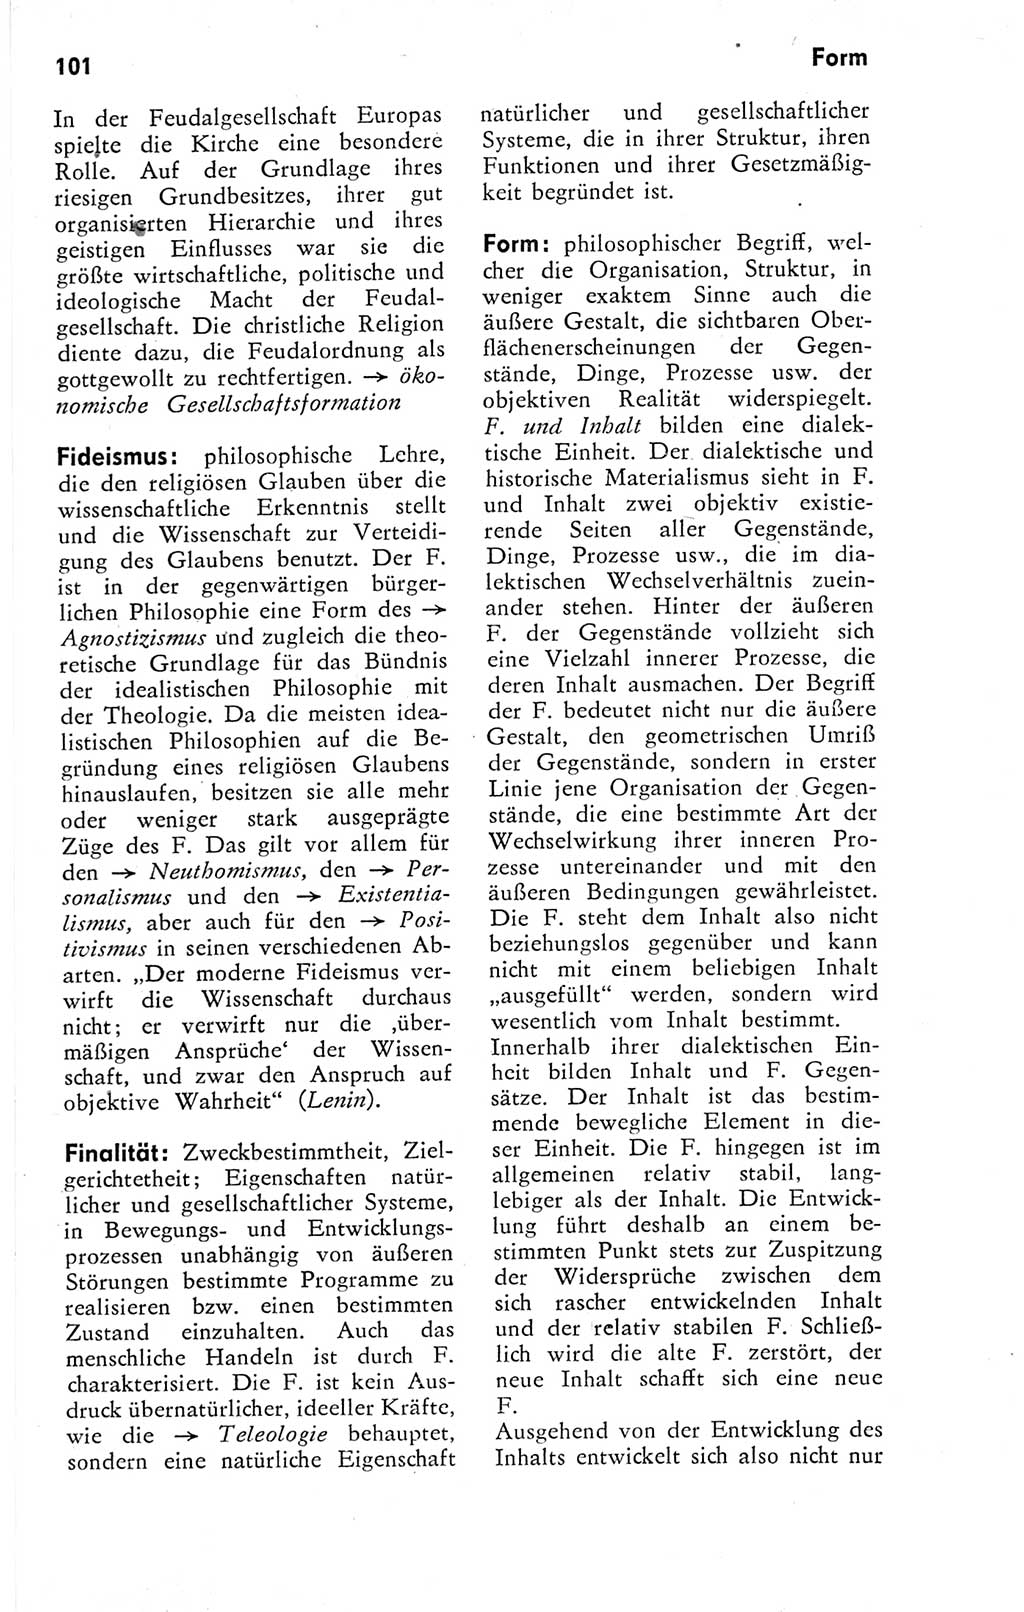 Kleines Wörterbuch der marxistisch-leninistischen Philosophie [Deutsche Demokratische Republik (DDR)] 1974, Seite 101 (Kl. Wb. ML Phil. DDR 1974, S. 101)